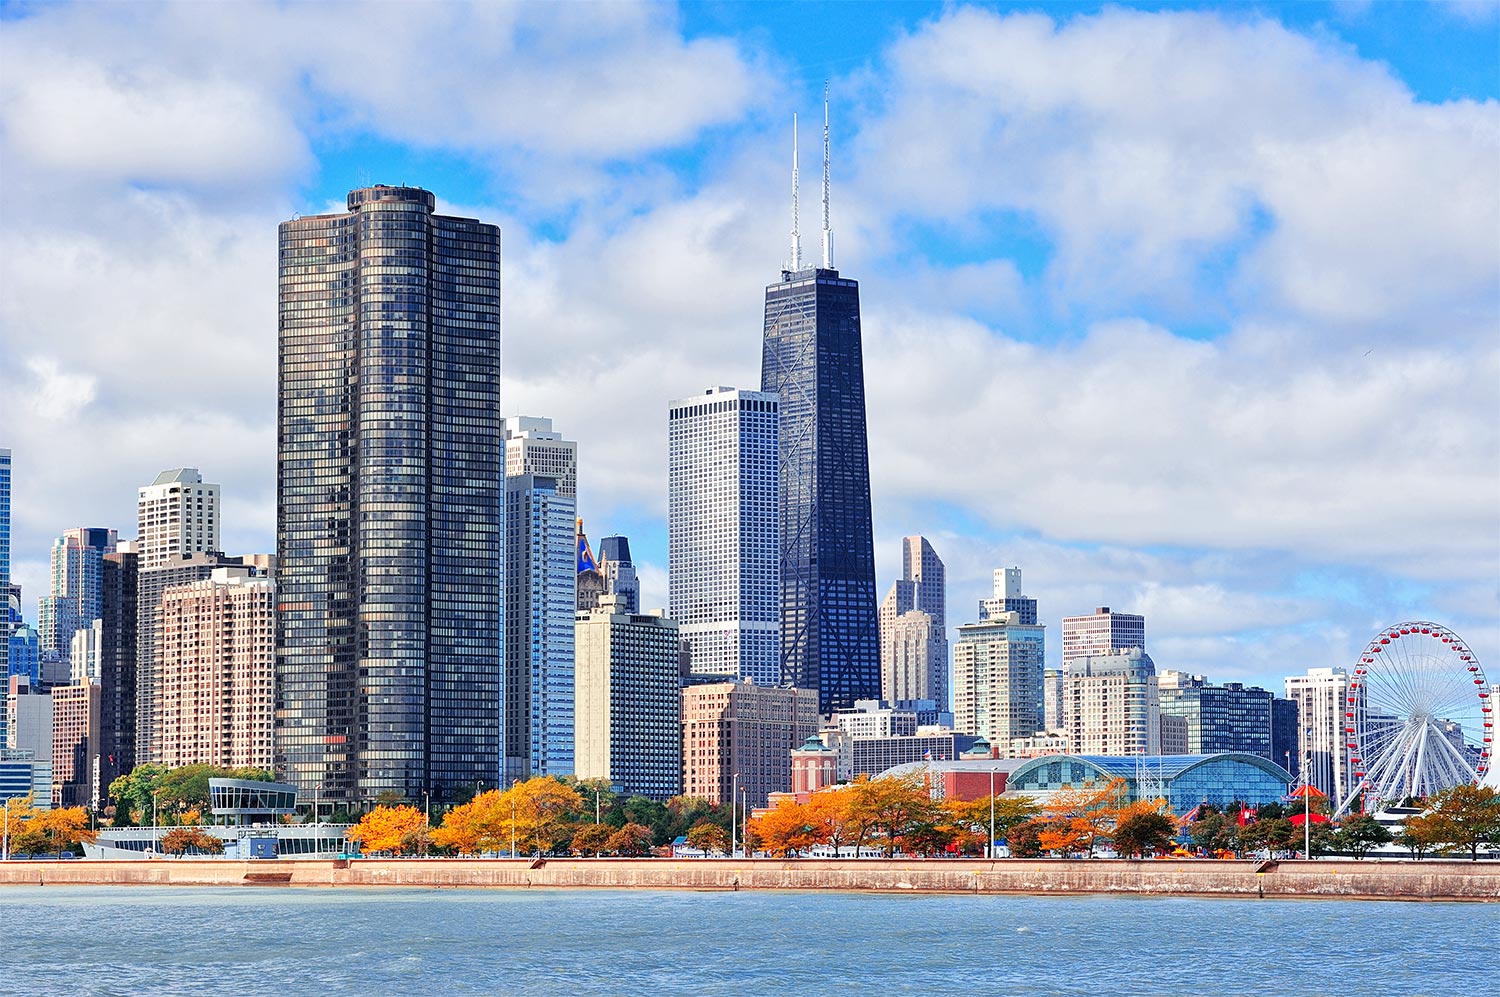 De skyline van Chicago